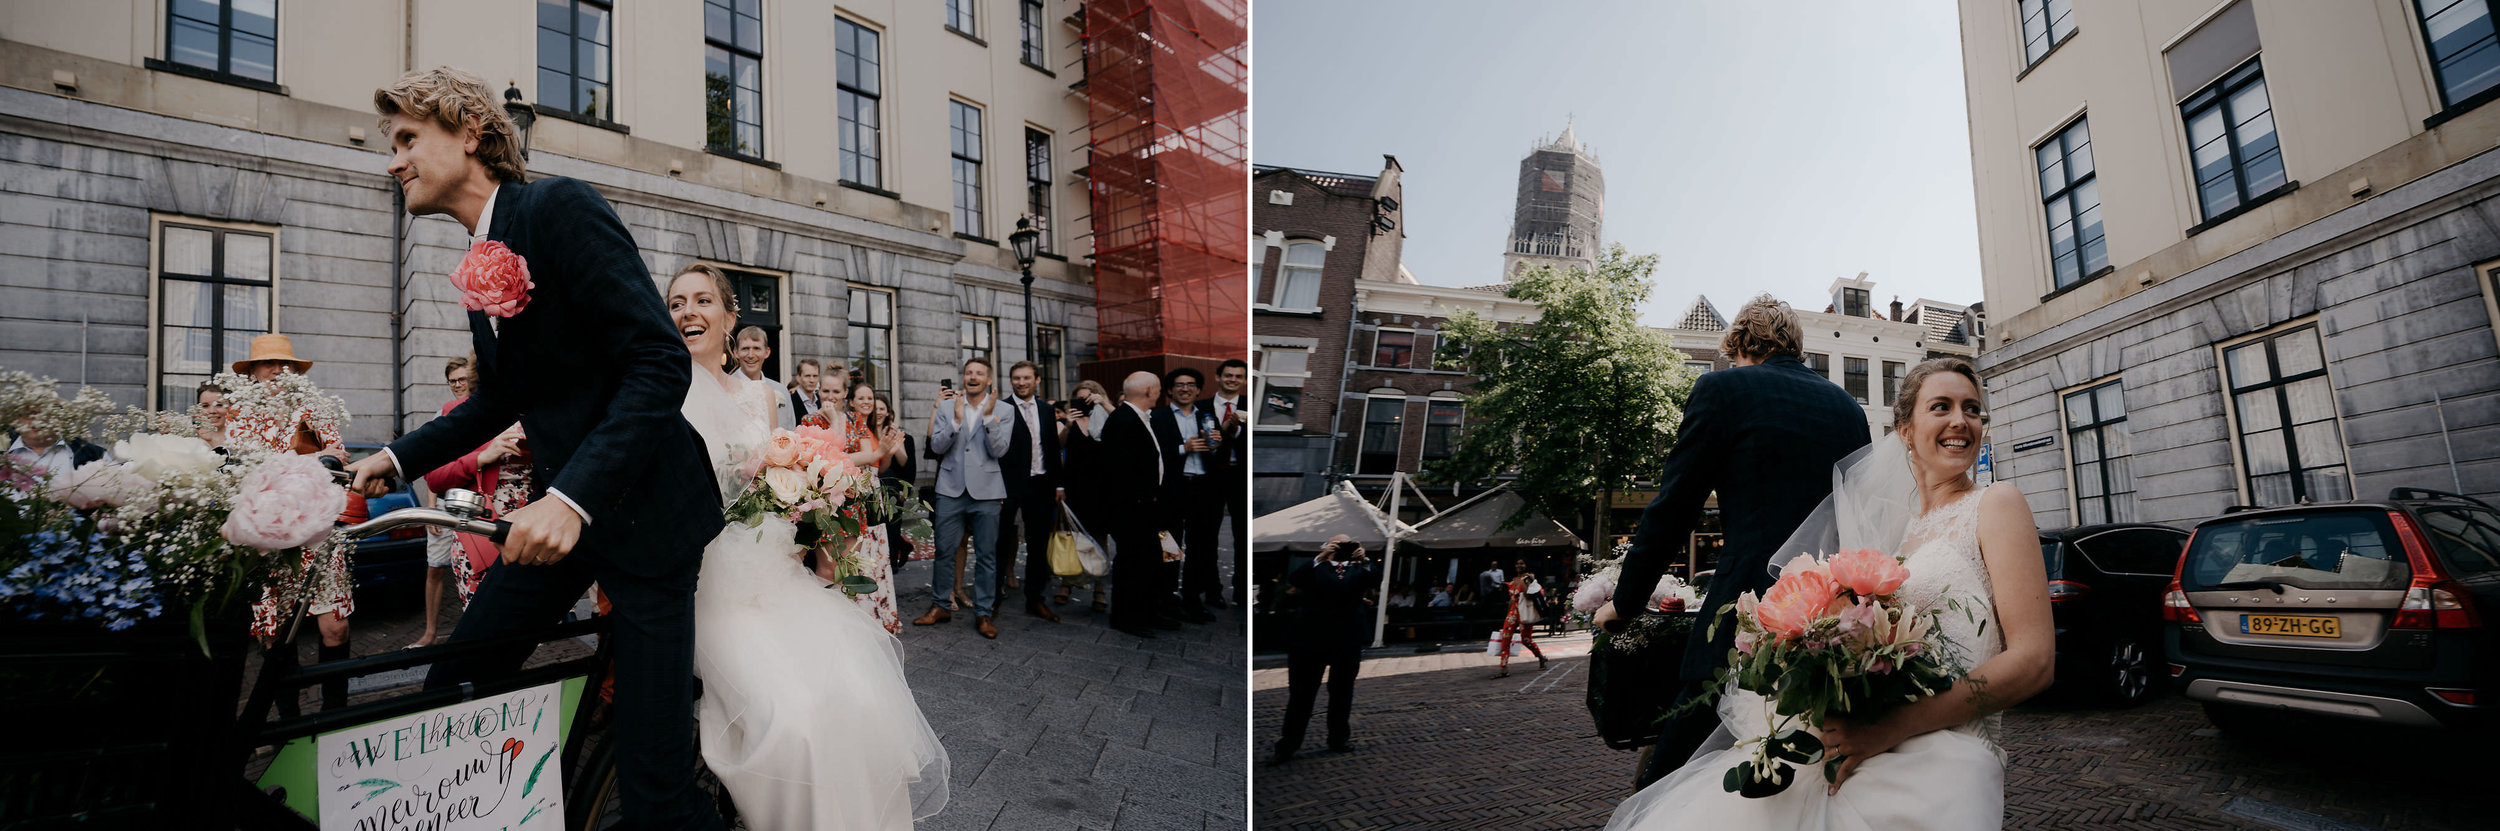 bruidsfotografie-trouwfotograaf-amsterdam-utrecht-mark-hadden-Koen-Laura-246 copy.jpg